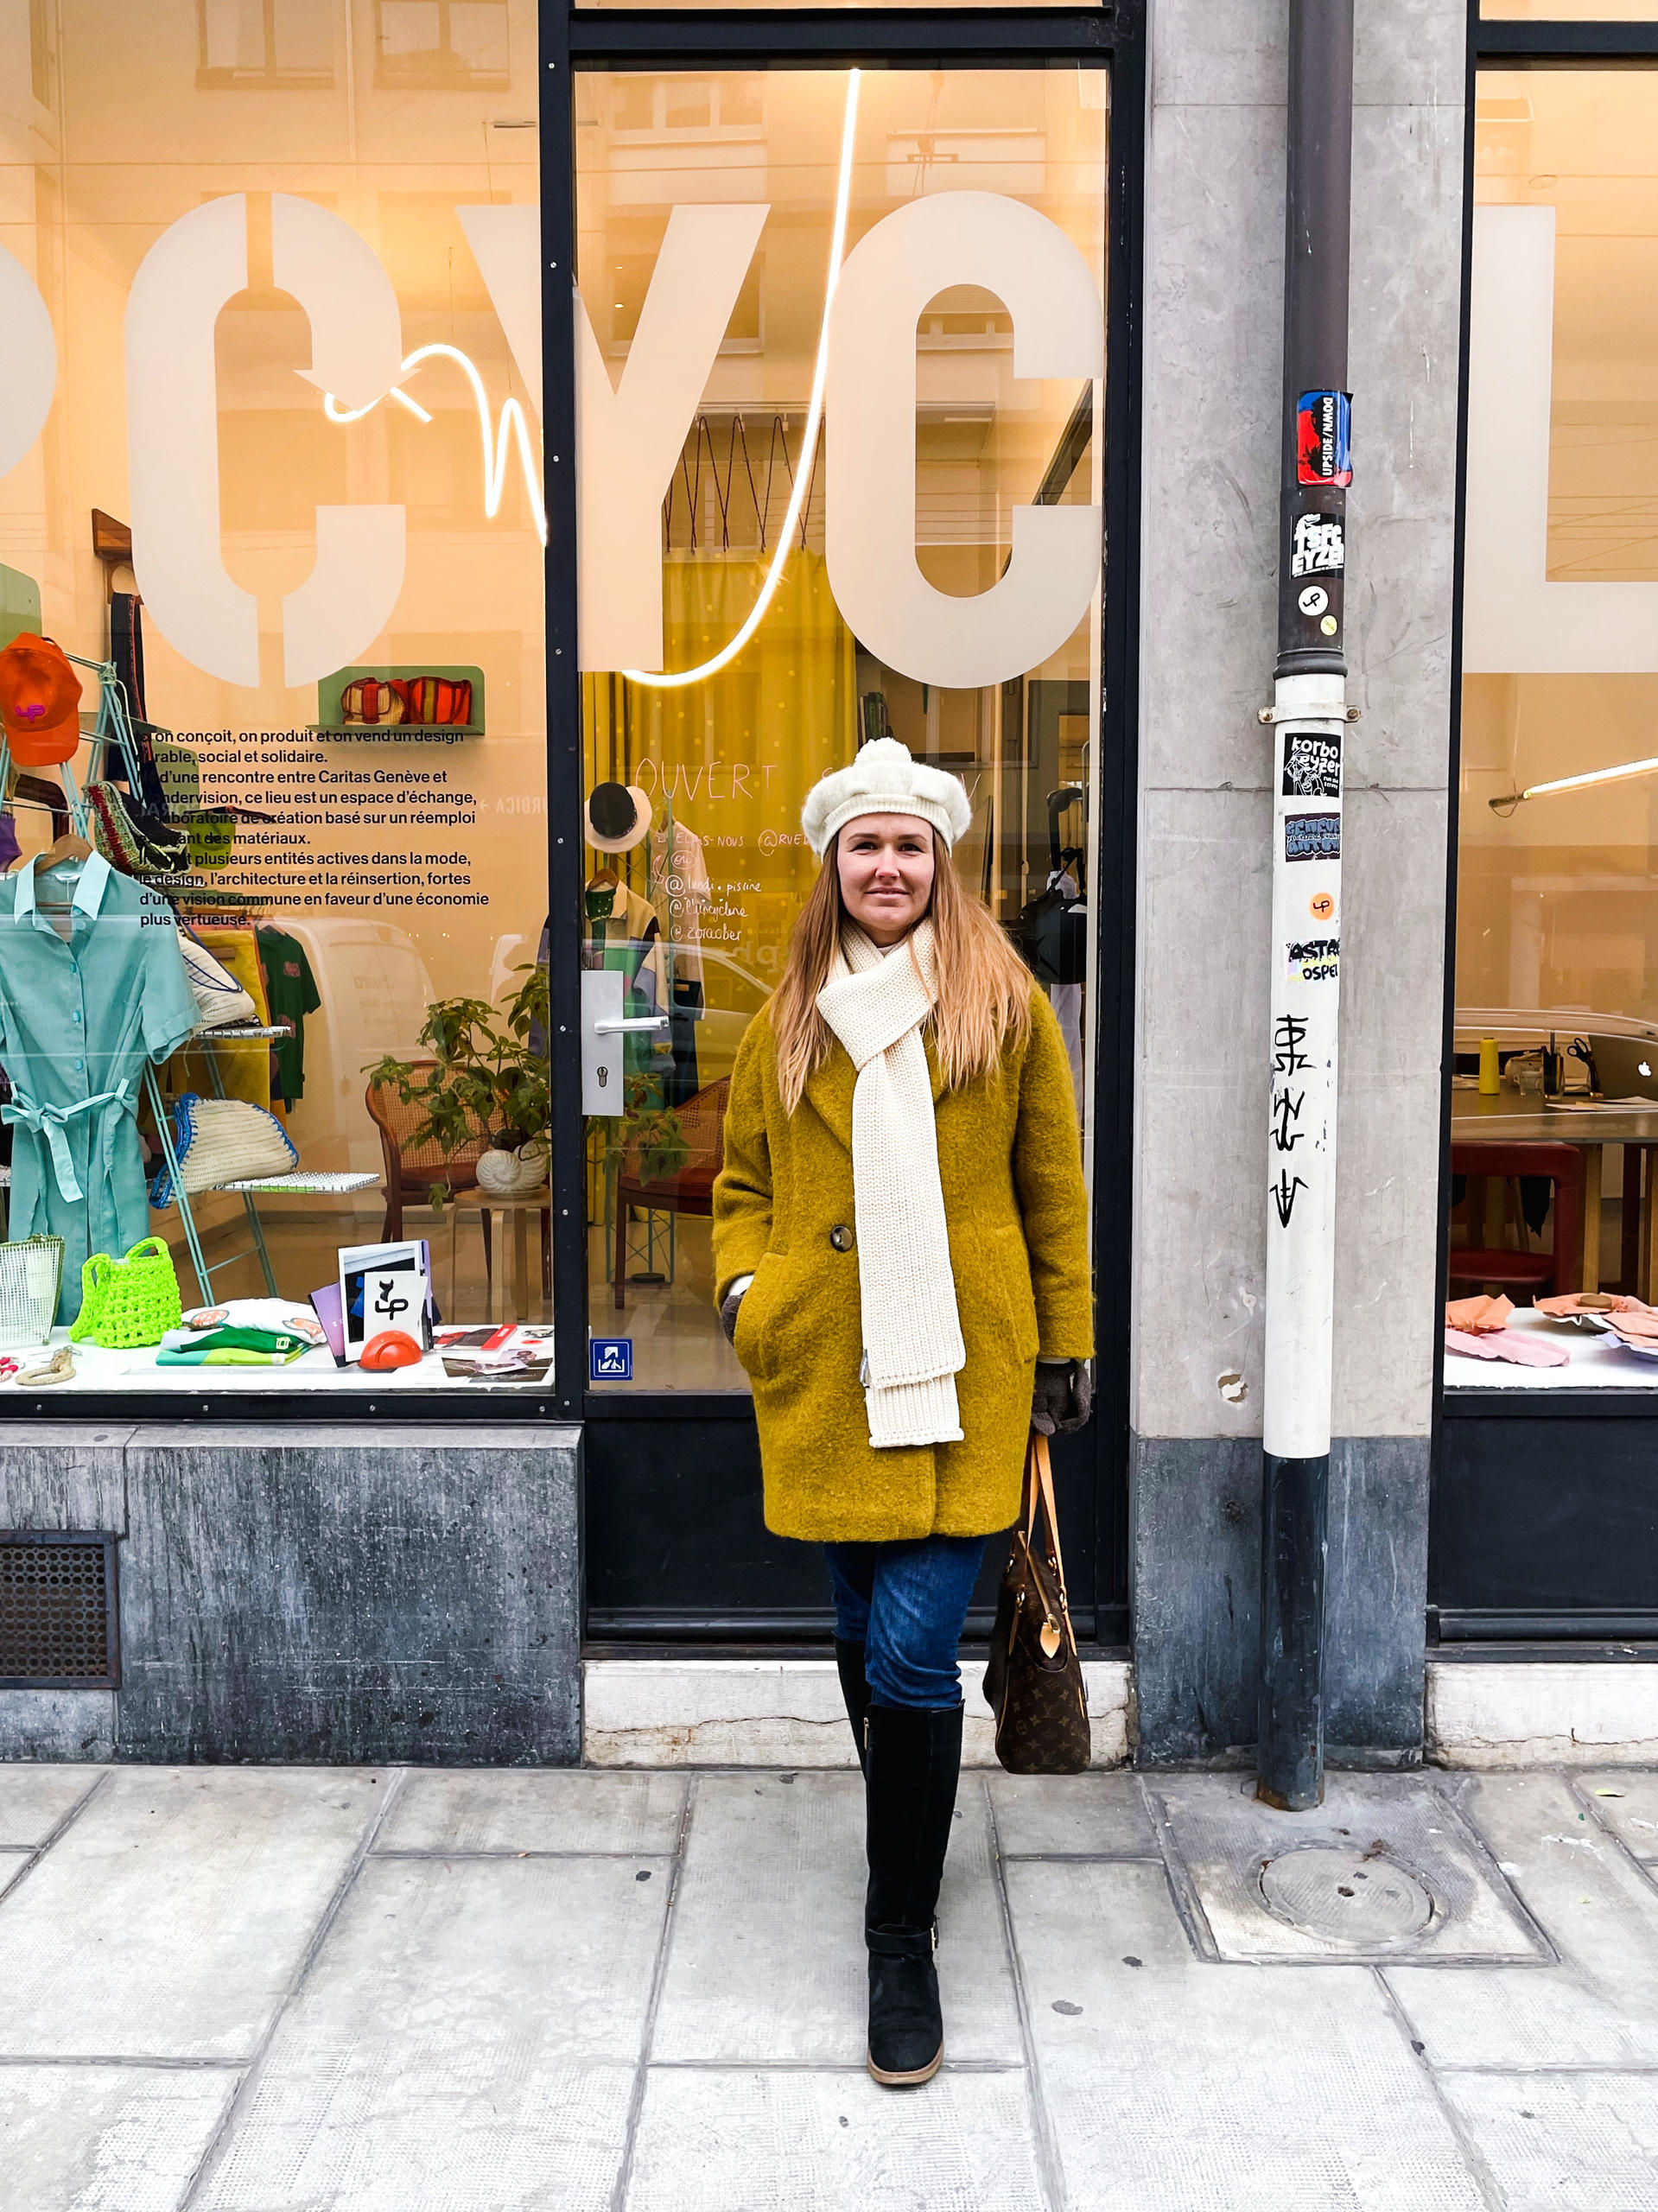 緹婭·芙拉迪米羅娃於日內瓦一家名為Upcyclerie的二手服裝店門口拍攝。這位研究人員藉由繪製地圖的方式對日內瓦境內定位於資源再利用和減少浪費的店鋪進行了標識。